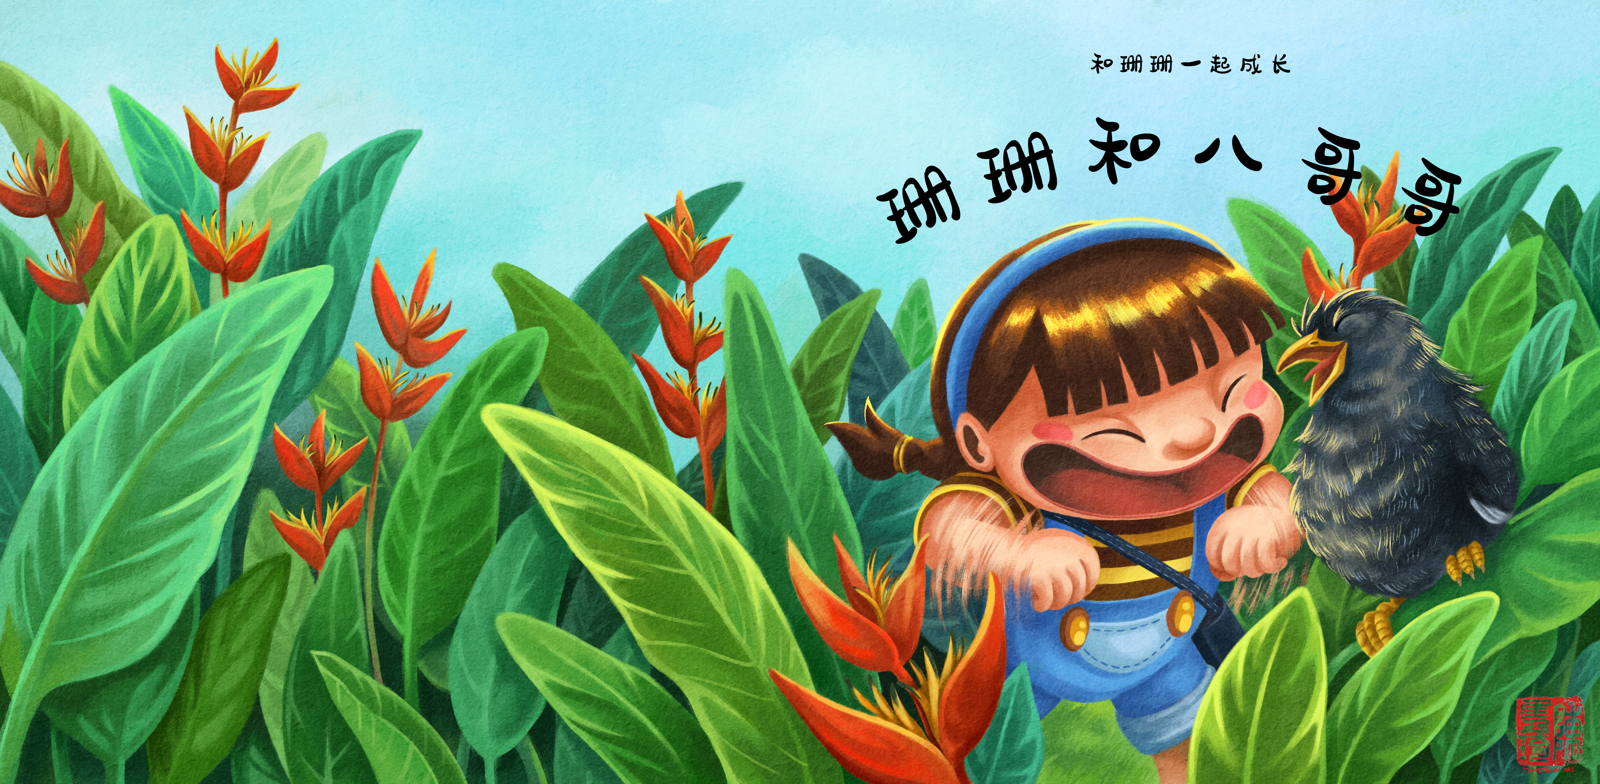 《和珊珊一起成长》的儿童绘本系列的第三本书 《珊珊和八哥哥》的封面插画设计(中文版)。珊珊站在赫蕉丛林中拍着手臂和八哥哥一起开开心心地唱歌。